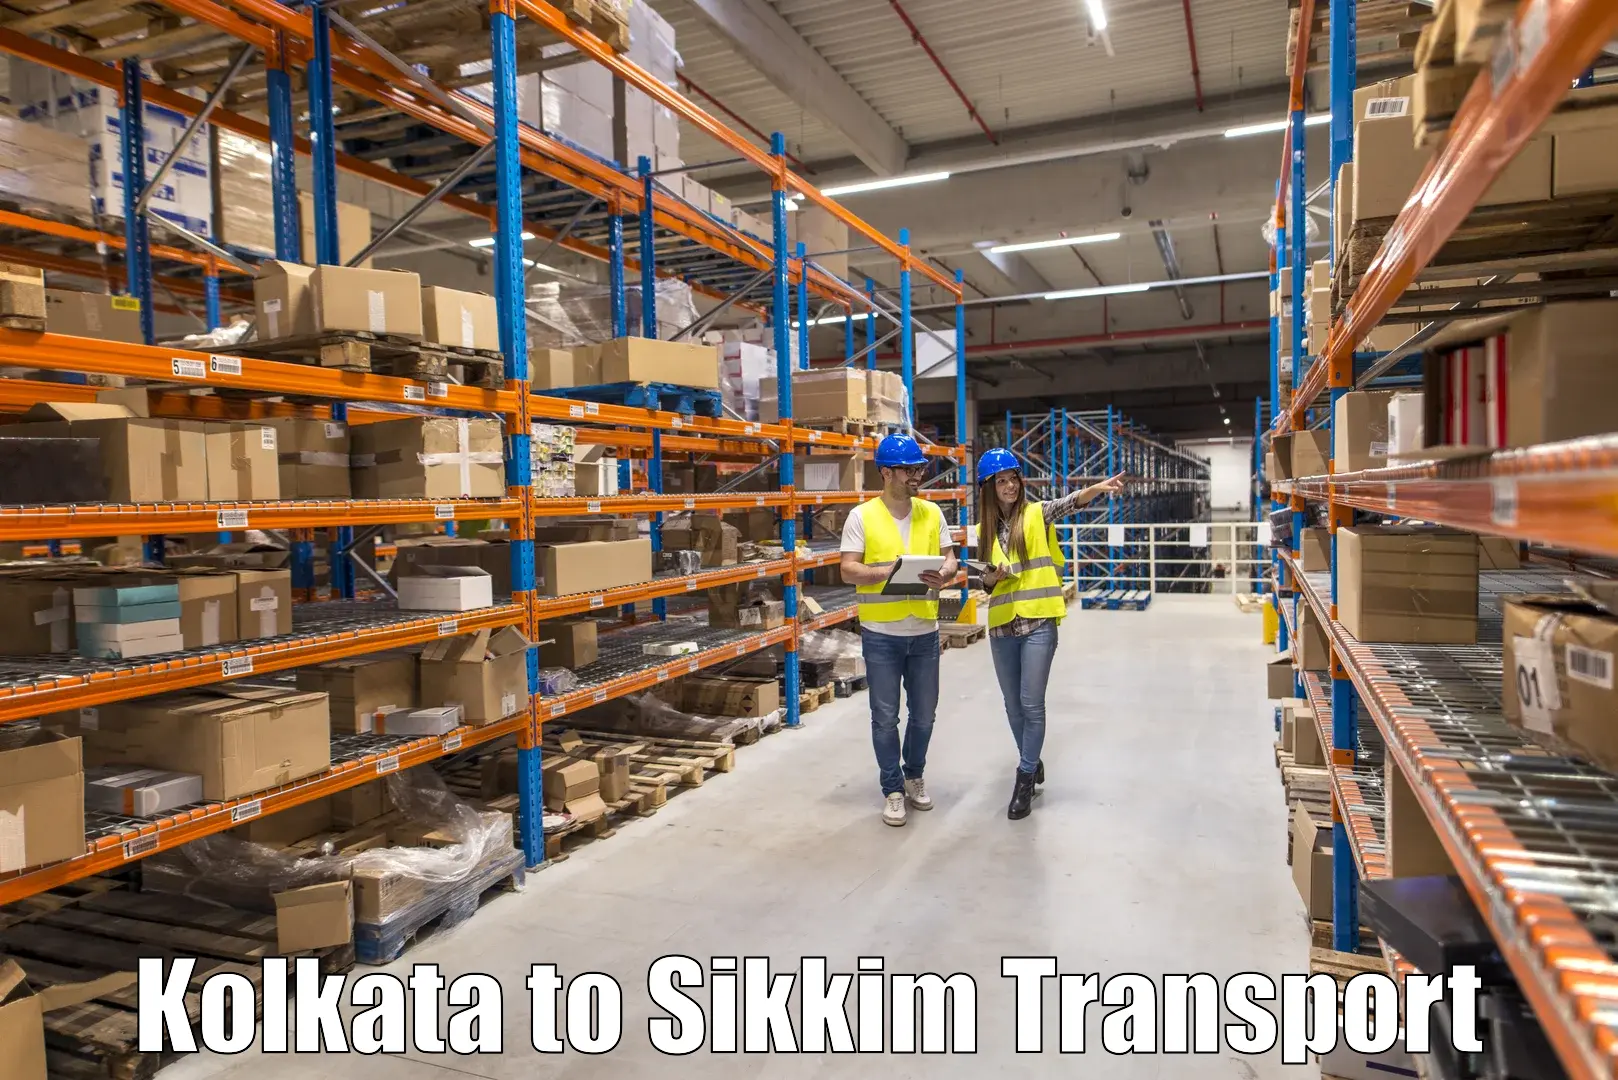 Online transport booking Kolkata to Sikkim